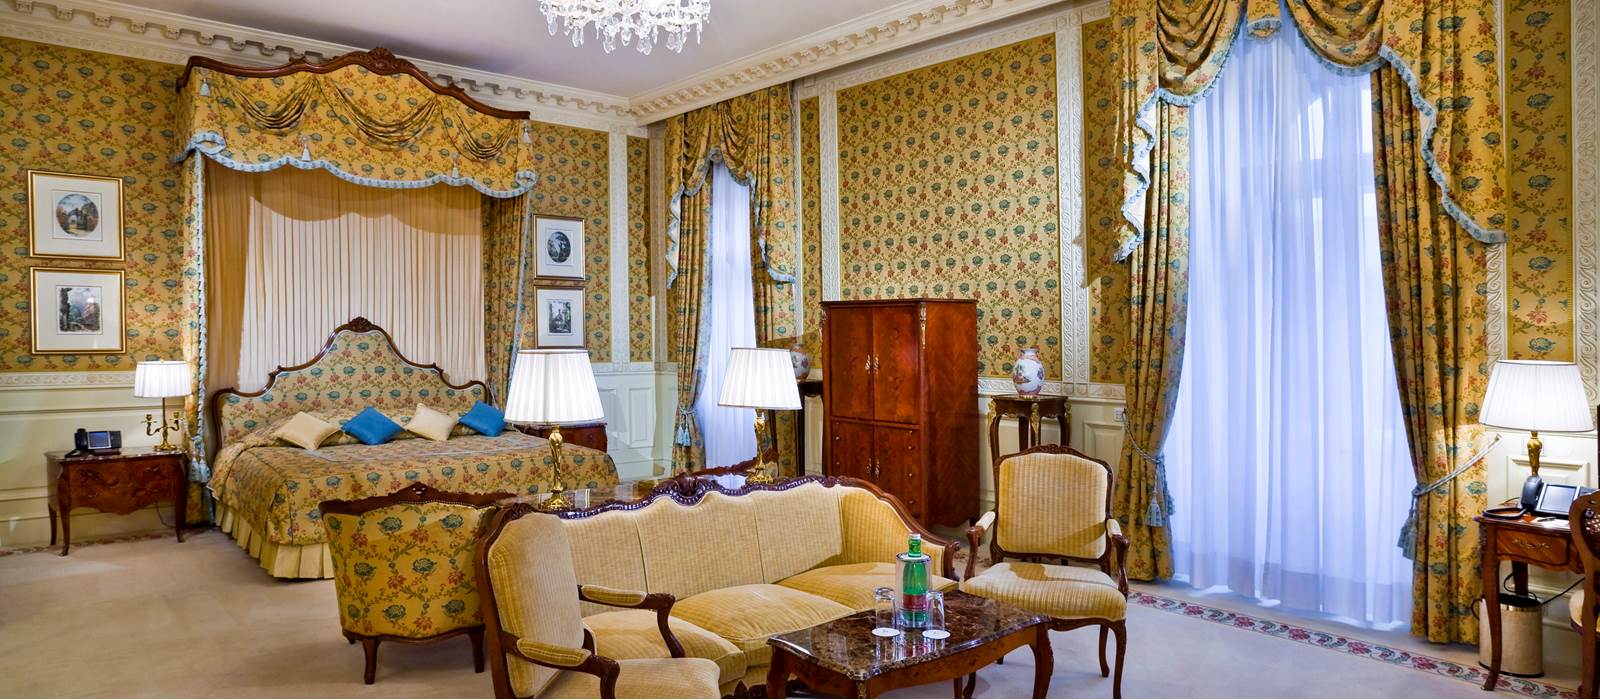 JJW_Grand-Hotel-Wien_Royal_Suite.jpg